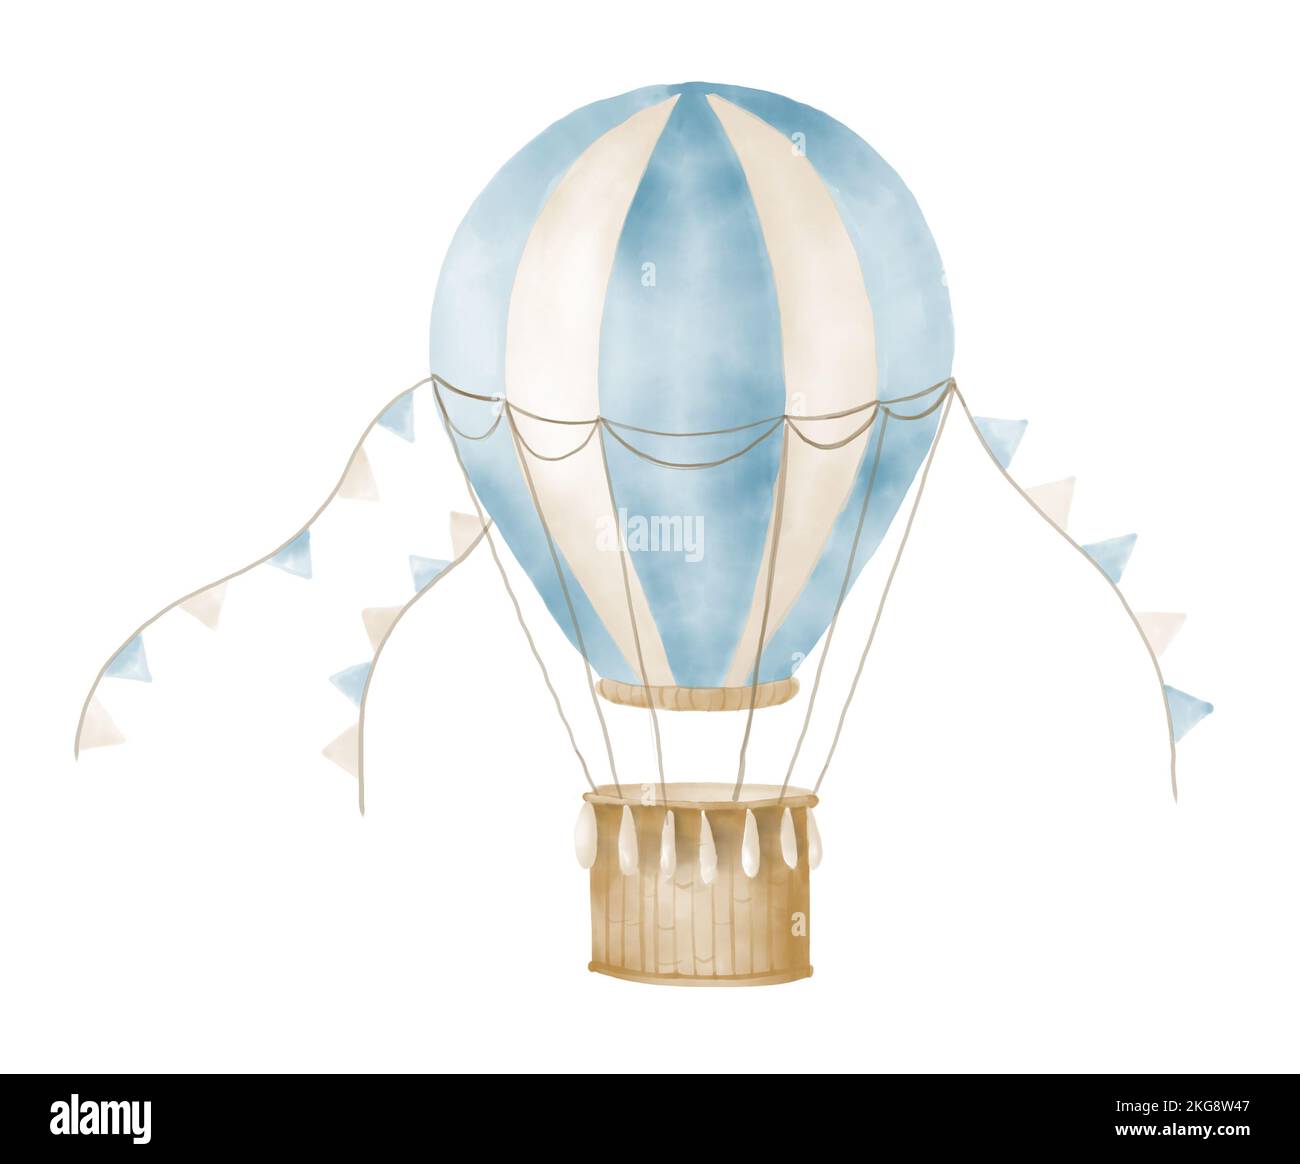 Illustration De Vecteur De Ballon à Air Et De Fusée Illustration de Vecteur  - Illustration du panier, exploration: 54255373